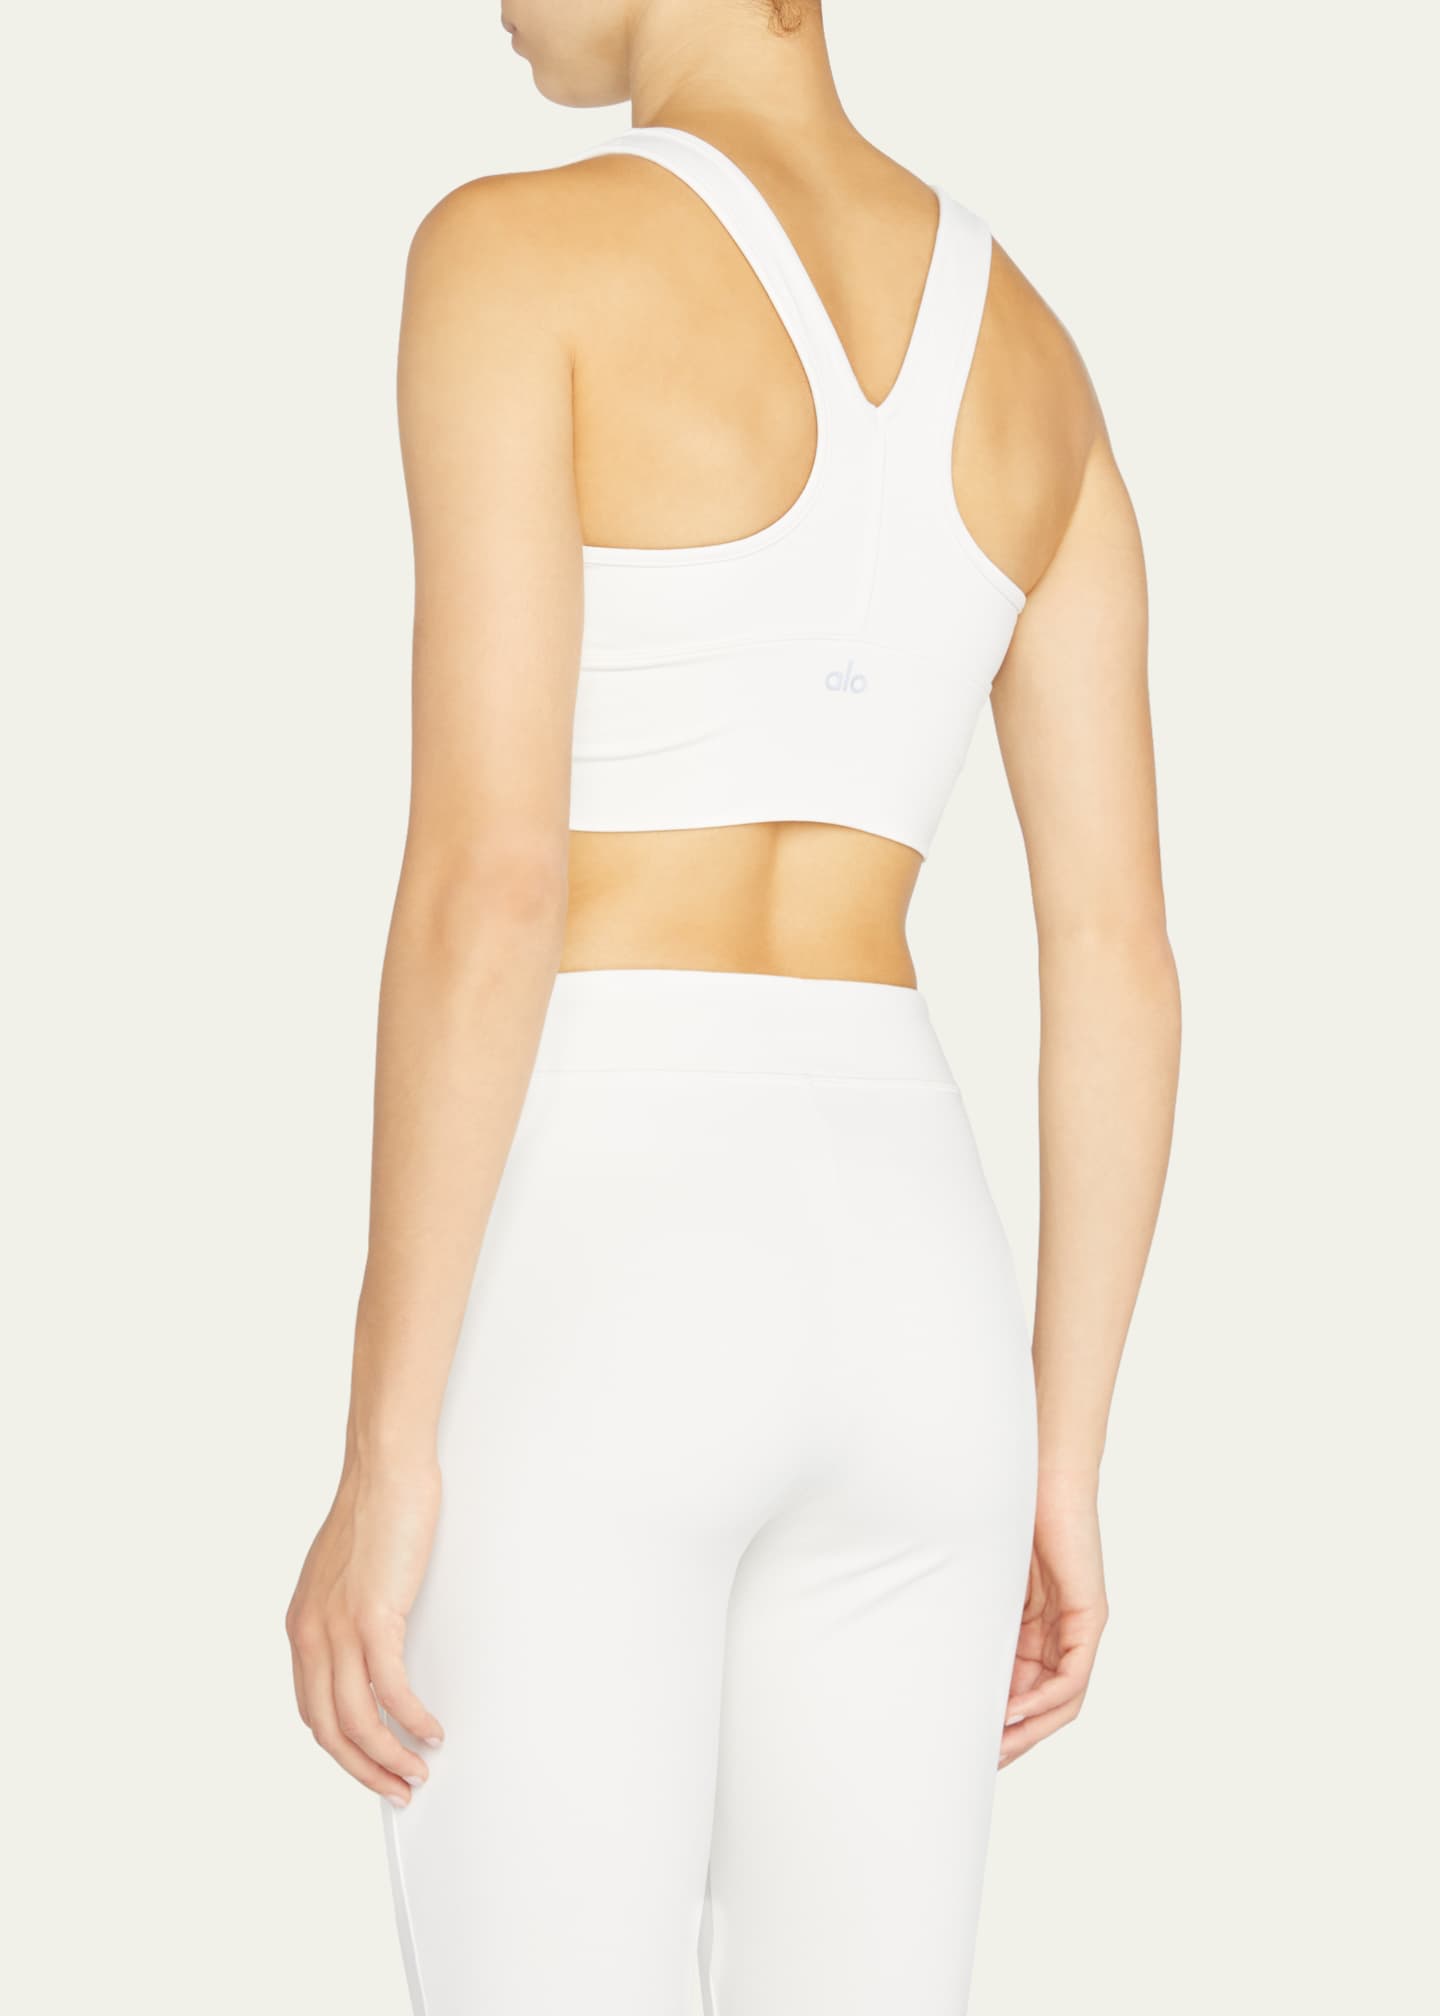 Wild Thing sports bra in white - Alo Yoga